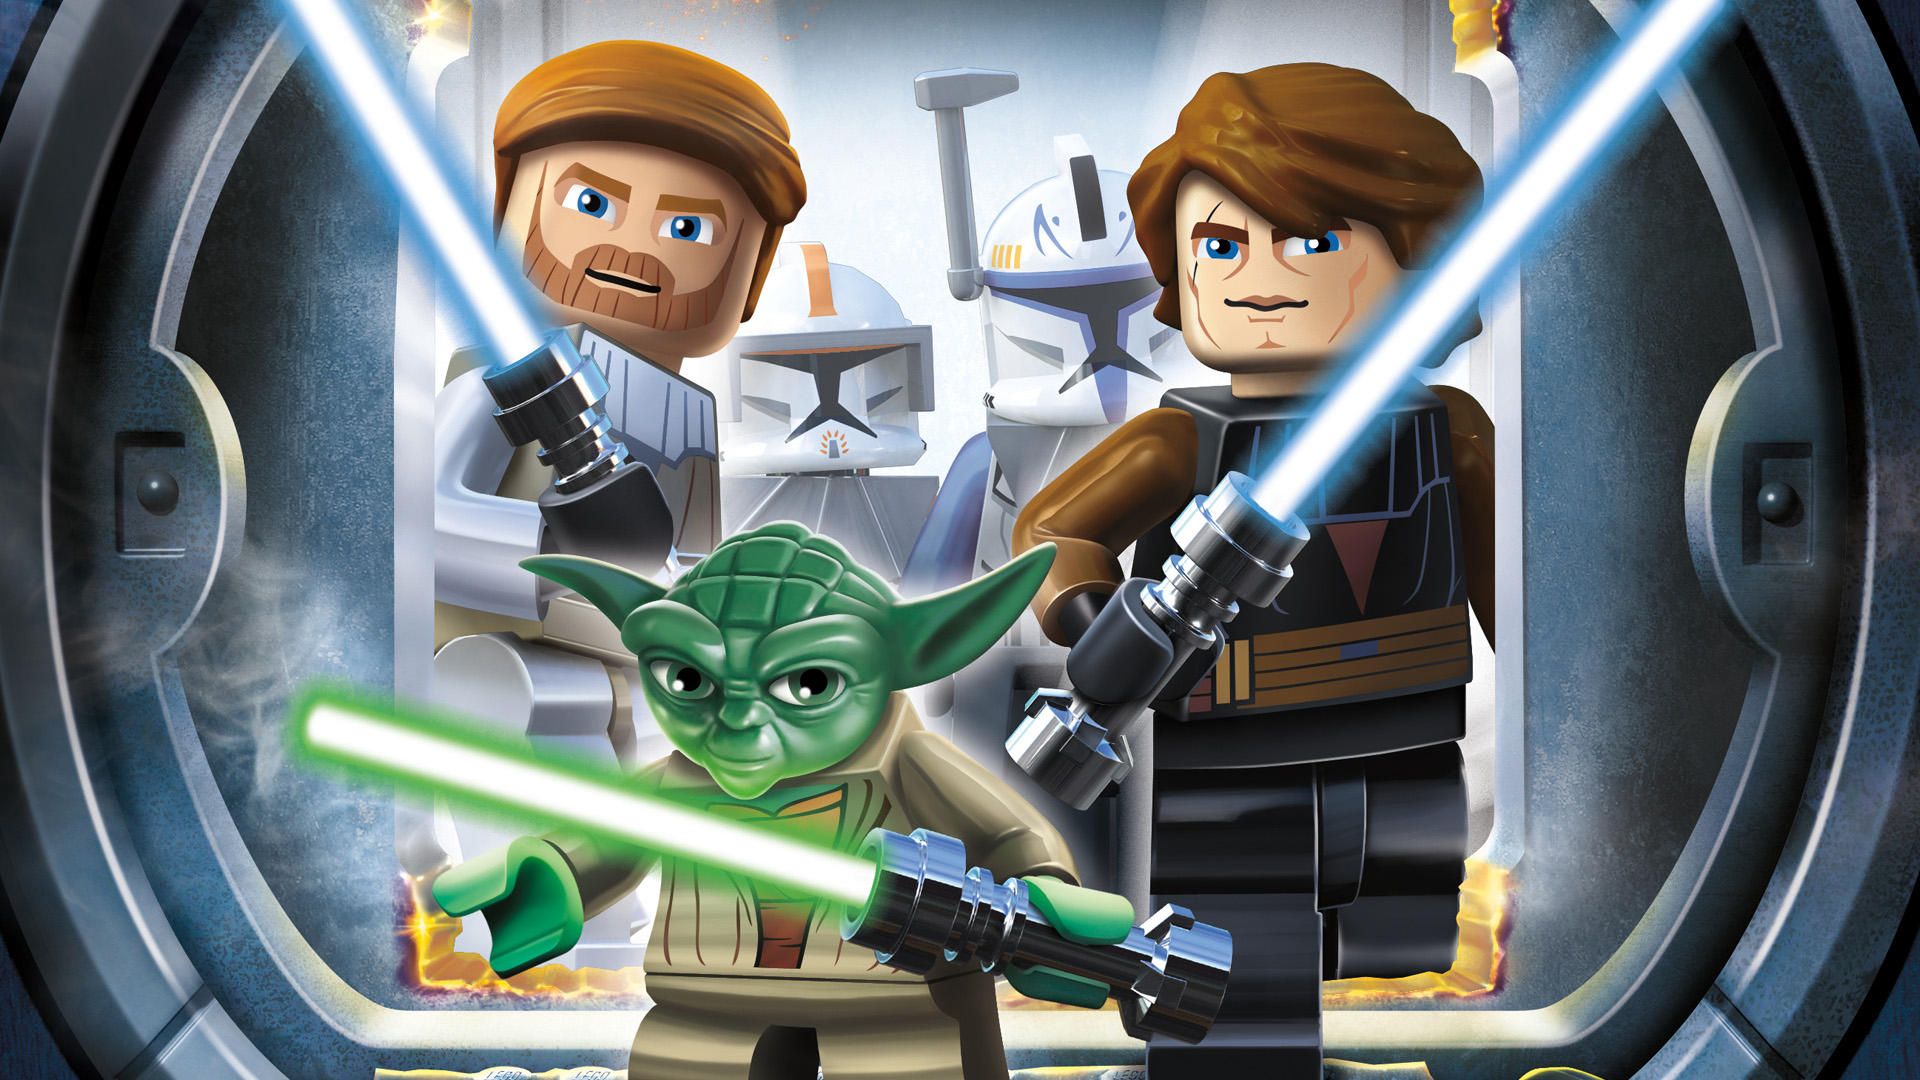 Lego star wars 3 the clone wars русификатор для steam фото 71